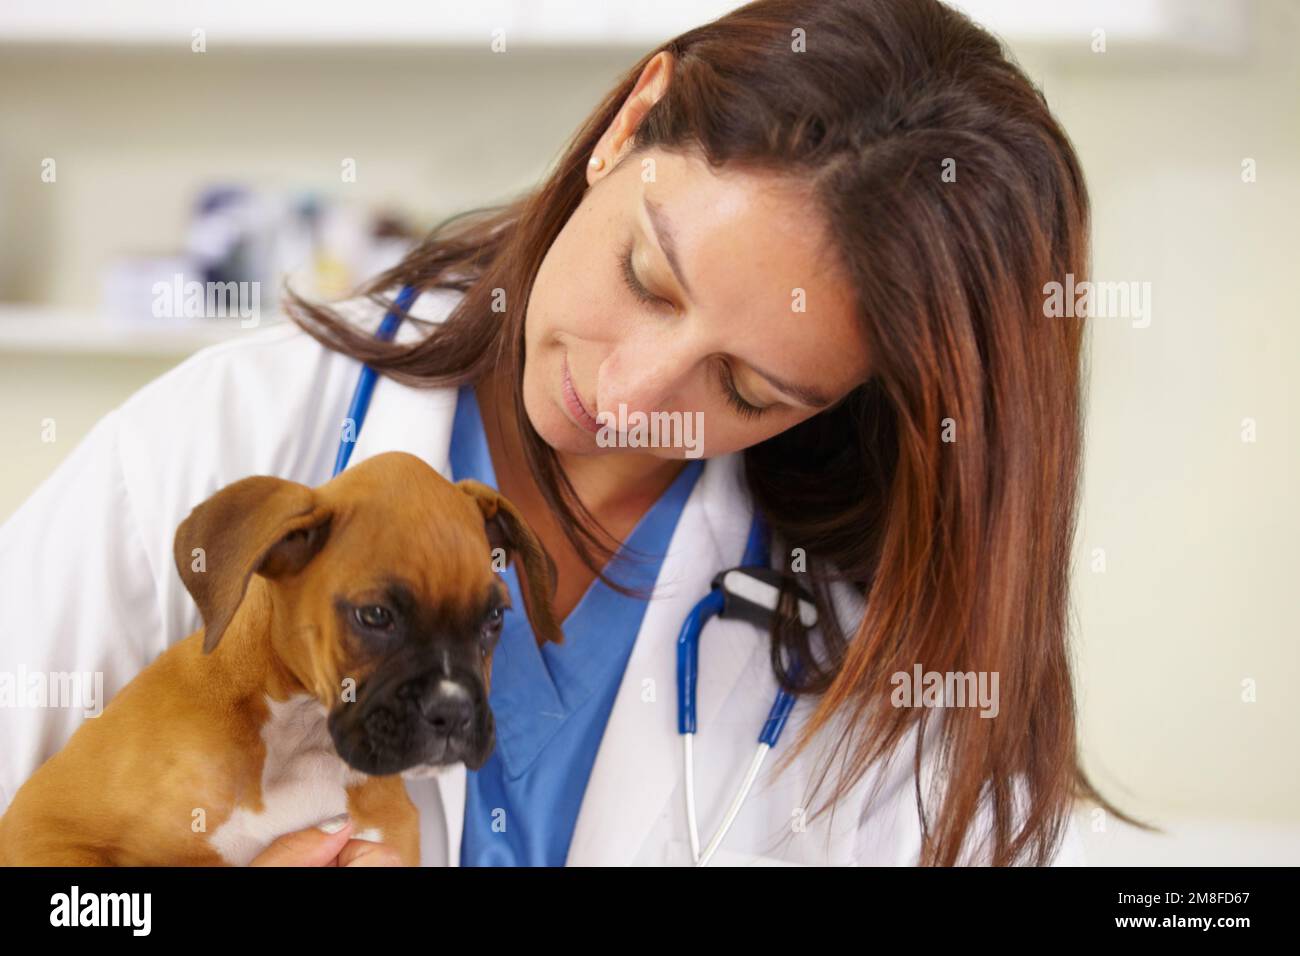 Ich untersuchte einen pelzigen kleinen Patienten. Eine junge Tierärztin untersucht einen Welpen in ihrem Büro. Stockfoto